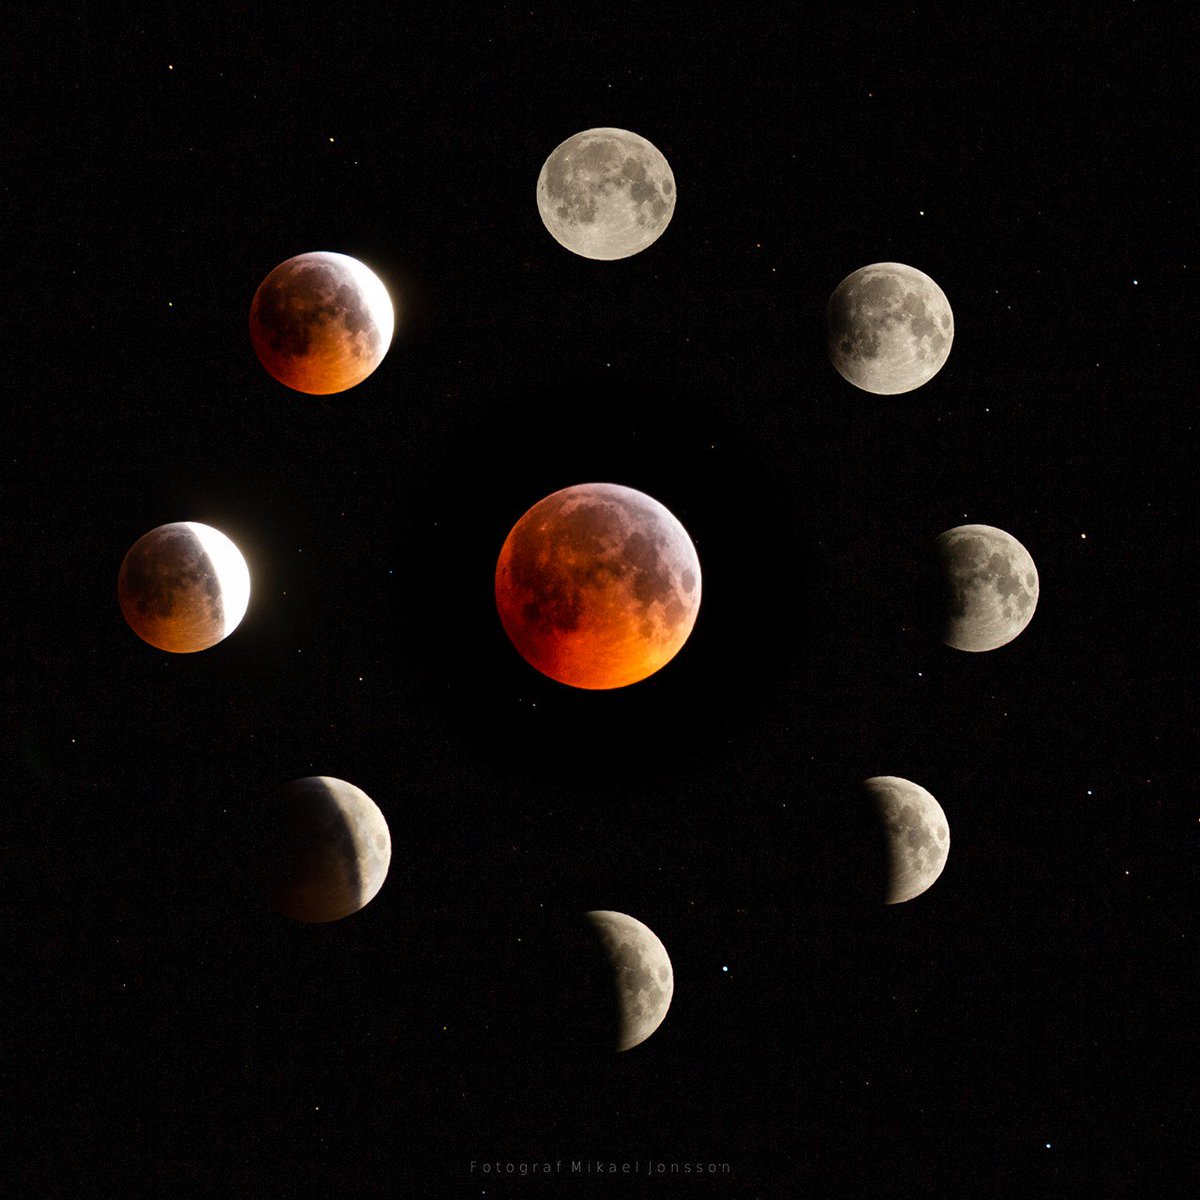 Compositon of Blood Moon 2019-01-21.
#eclipse #yourESA #bloodmooneclipse2019 #smhi #sweden #bloodmoon #örnsköldsvik #högakusten #NASA #BloodWolfMoon